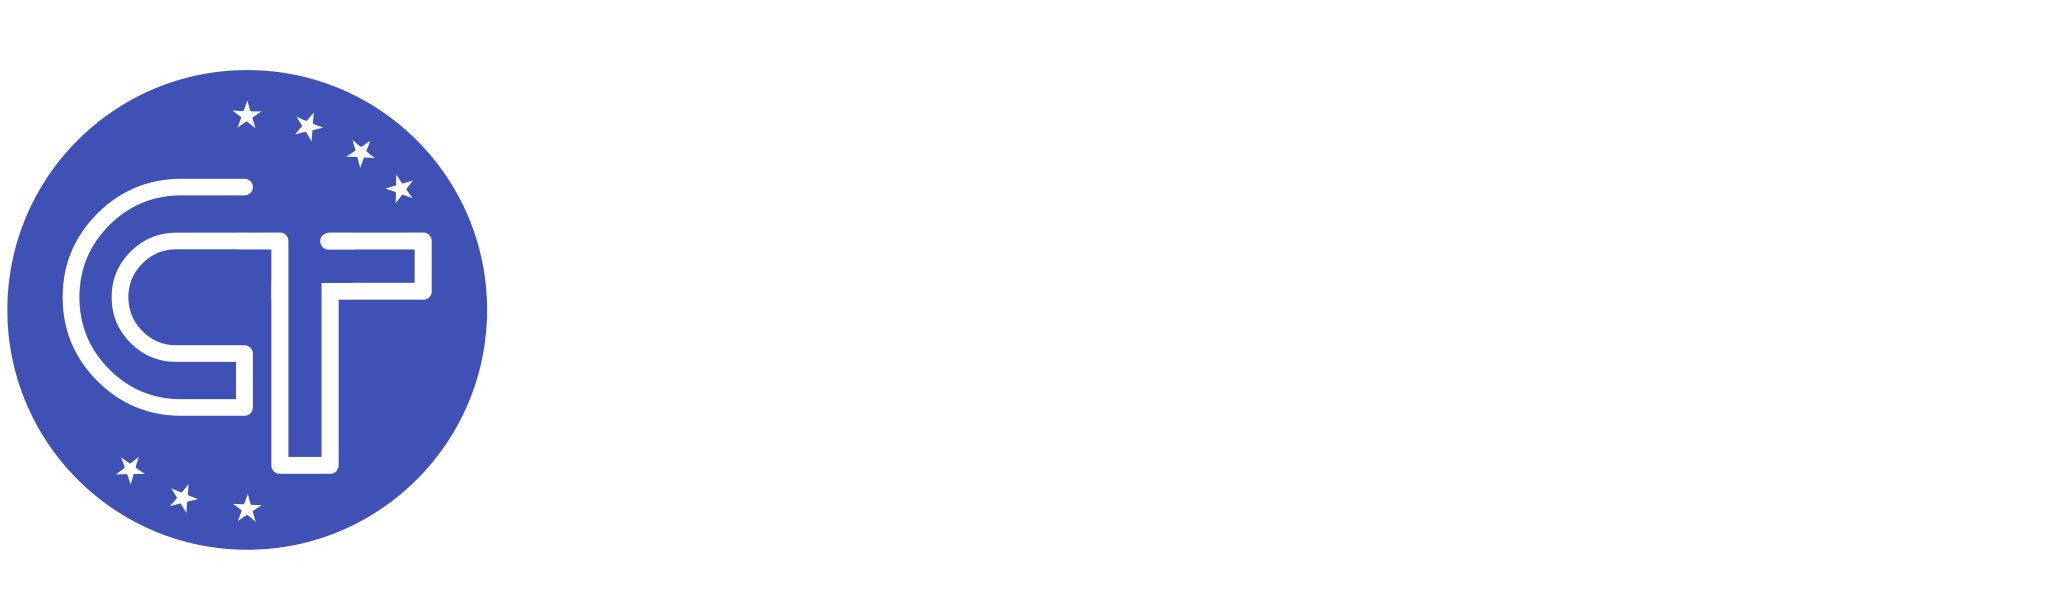 Cardano Tools logo